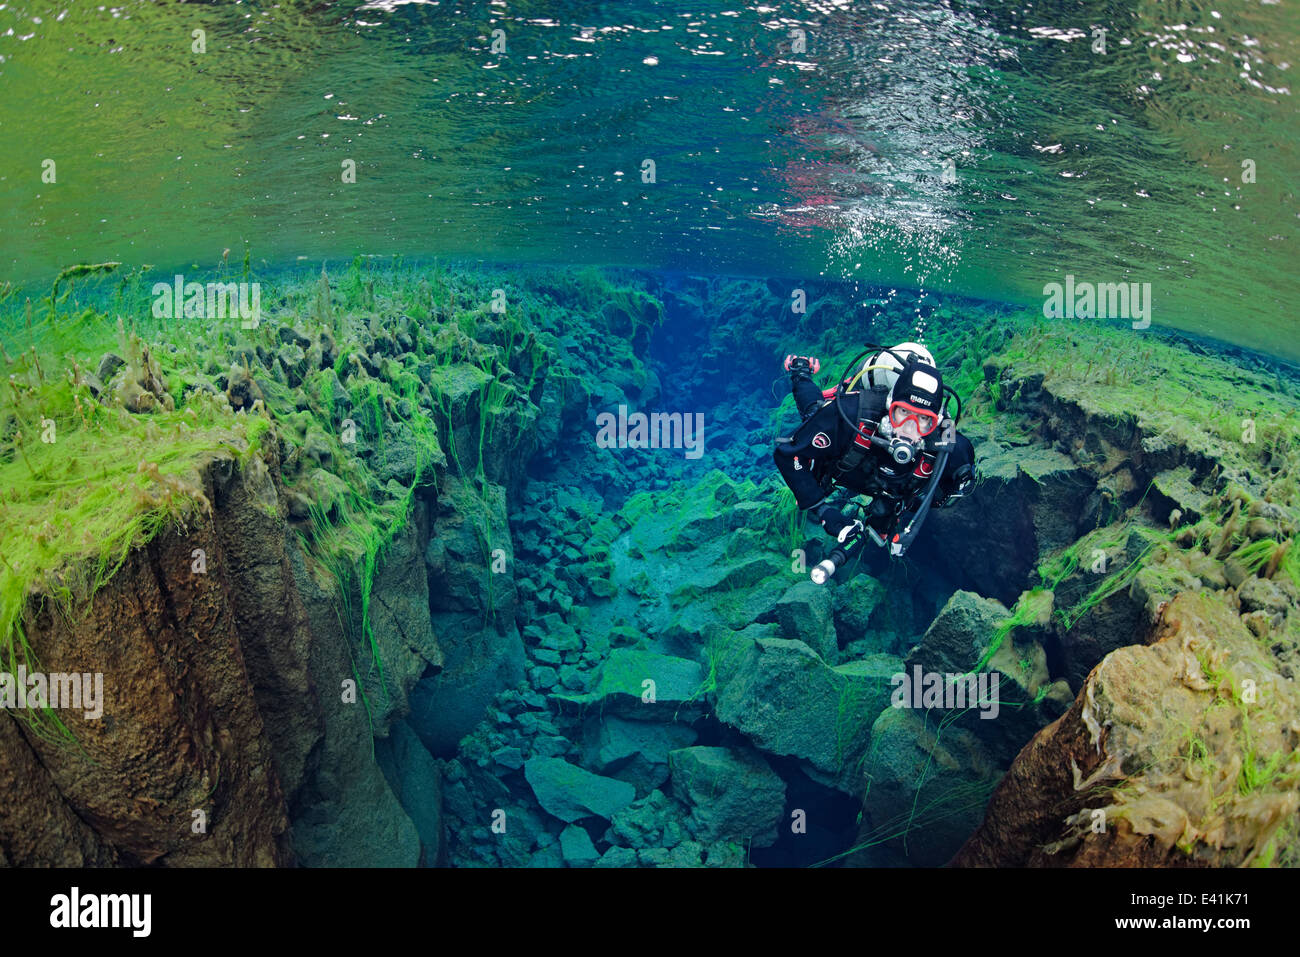 Silfra, Silfra - la fissure d'eau douce entre les continents, Silfra, thingvellir Nationalpark, Islande Banque D'Images